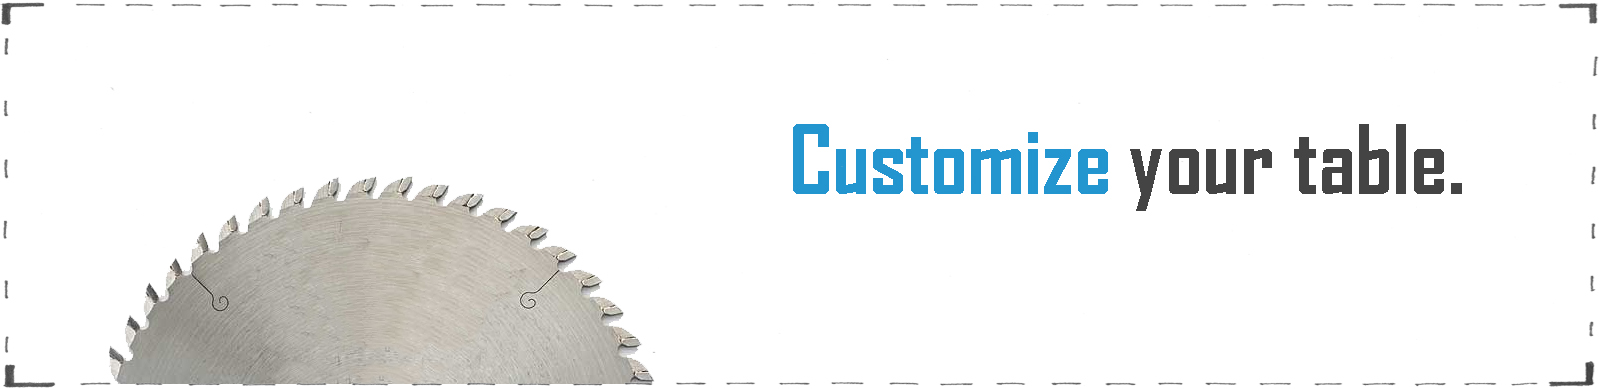 custom_table_build-your-table